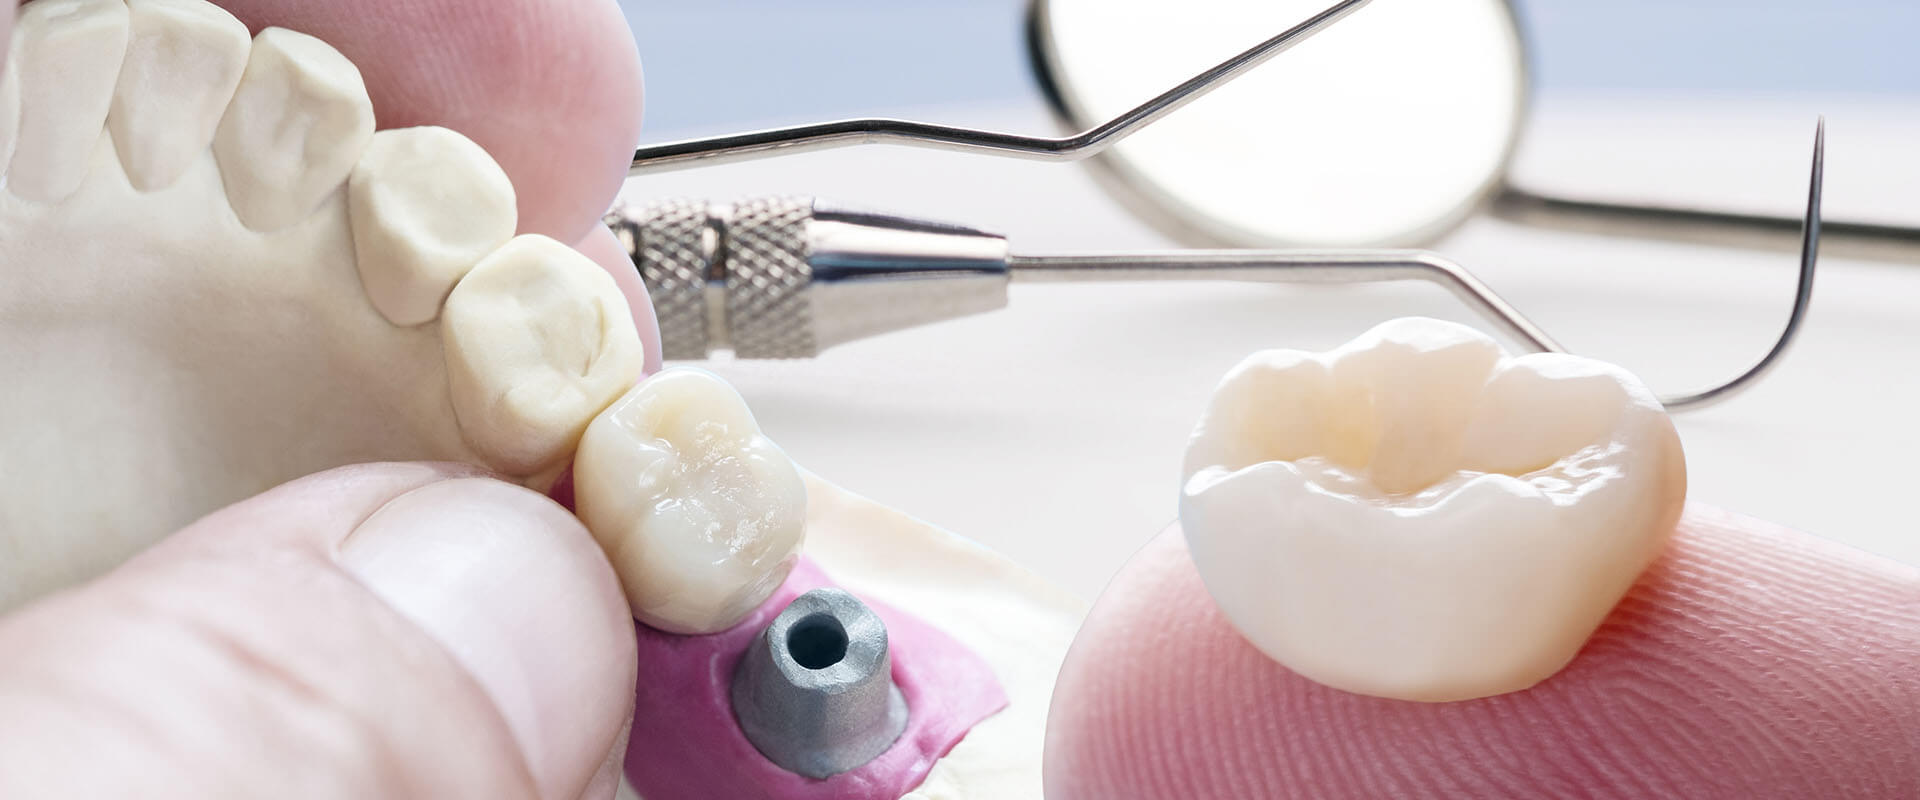 Hybrid Implant Denture - Reston Family Dental Center